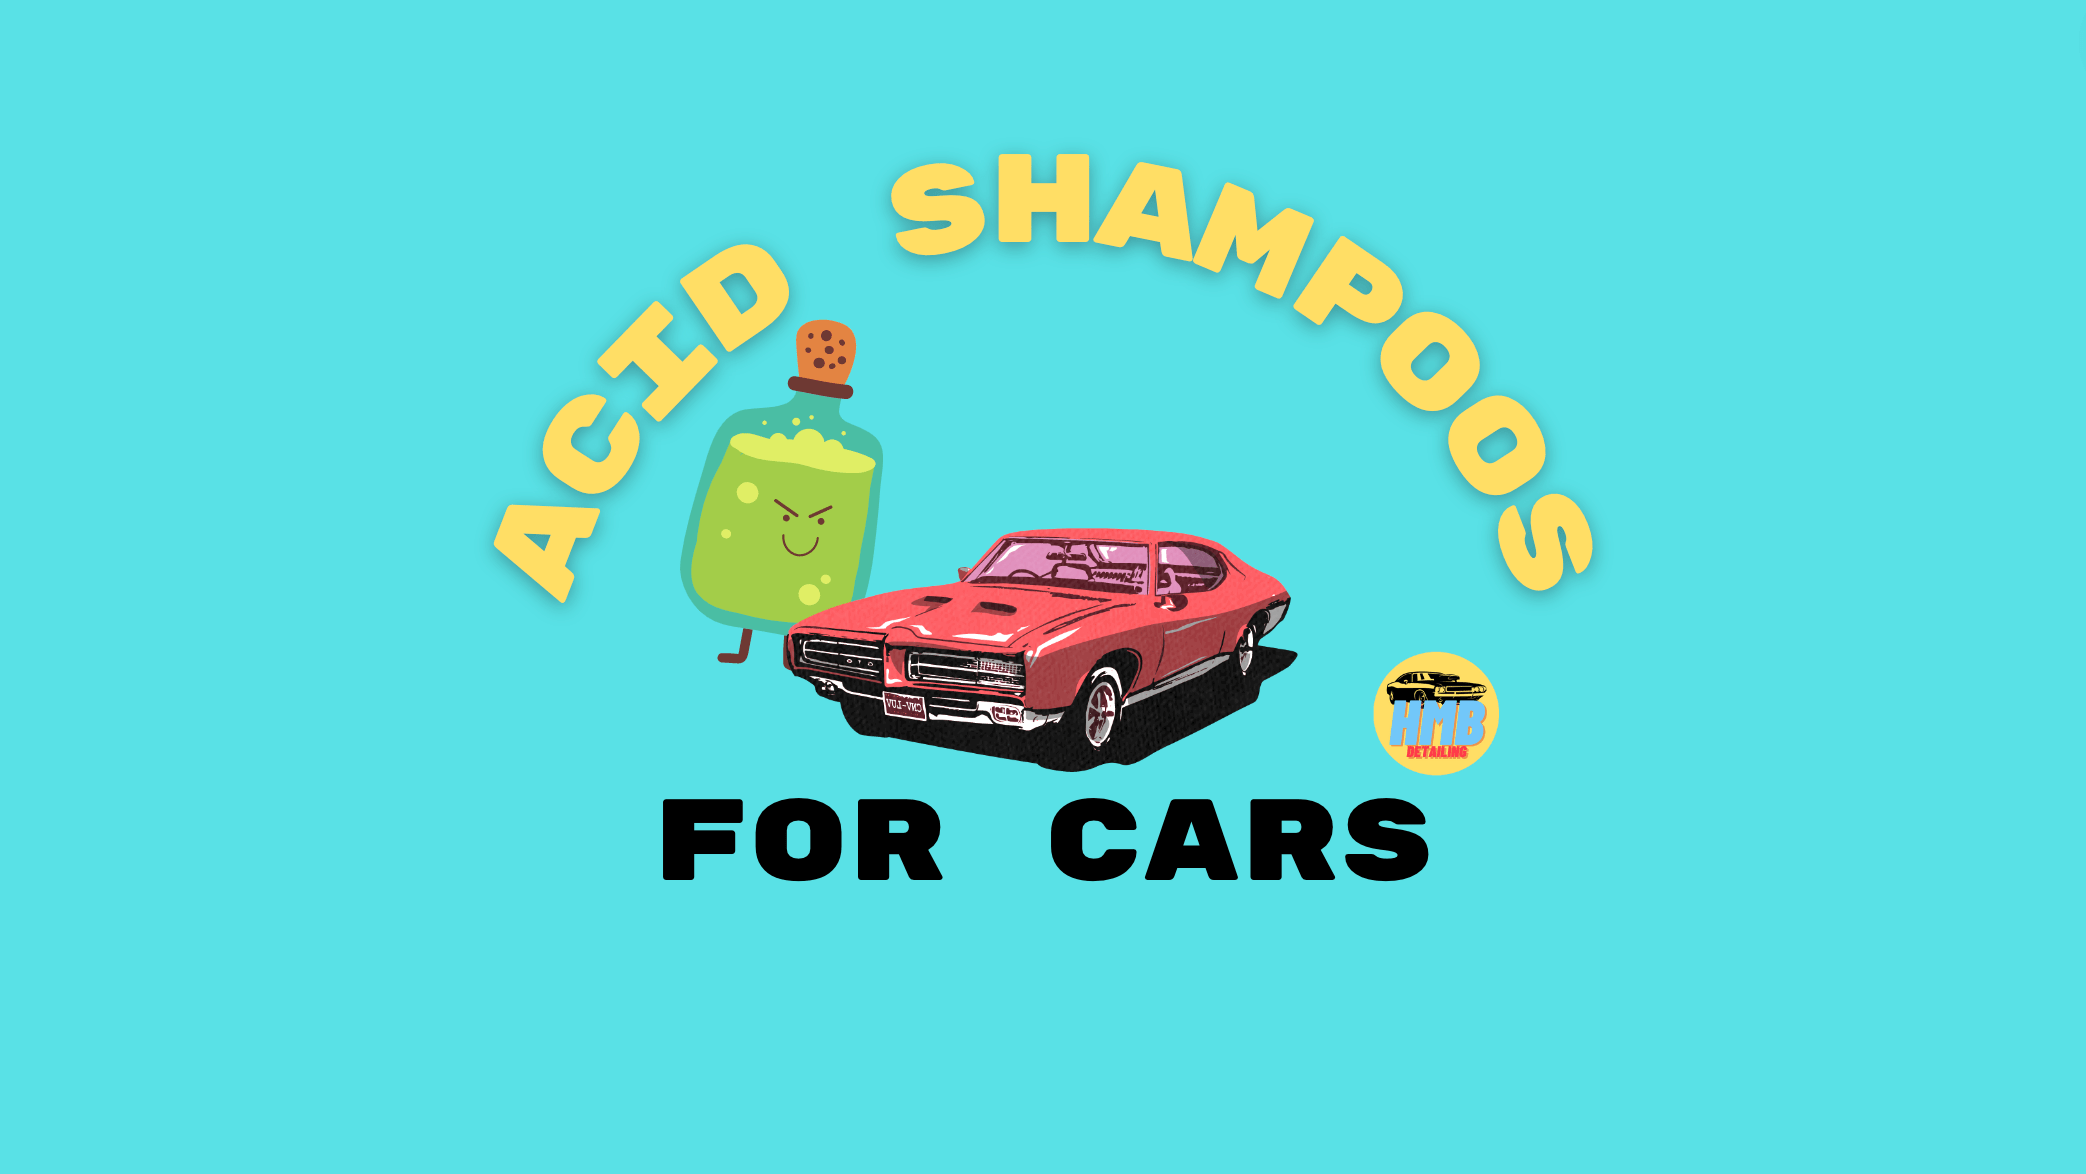 acid shampoo for cars